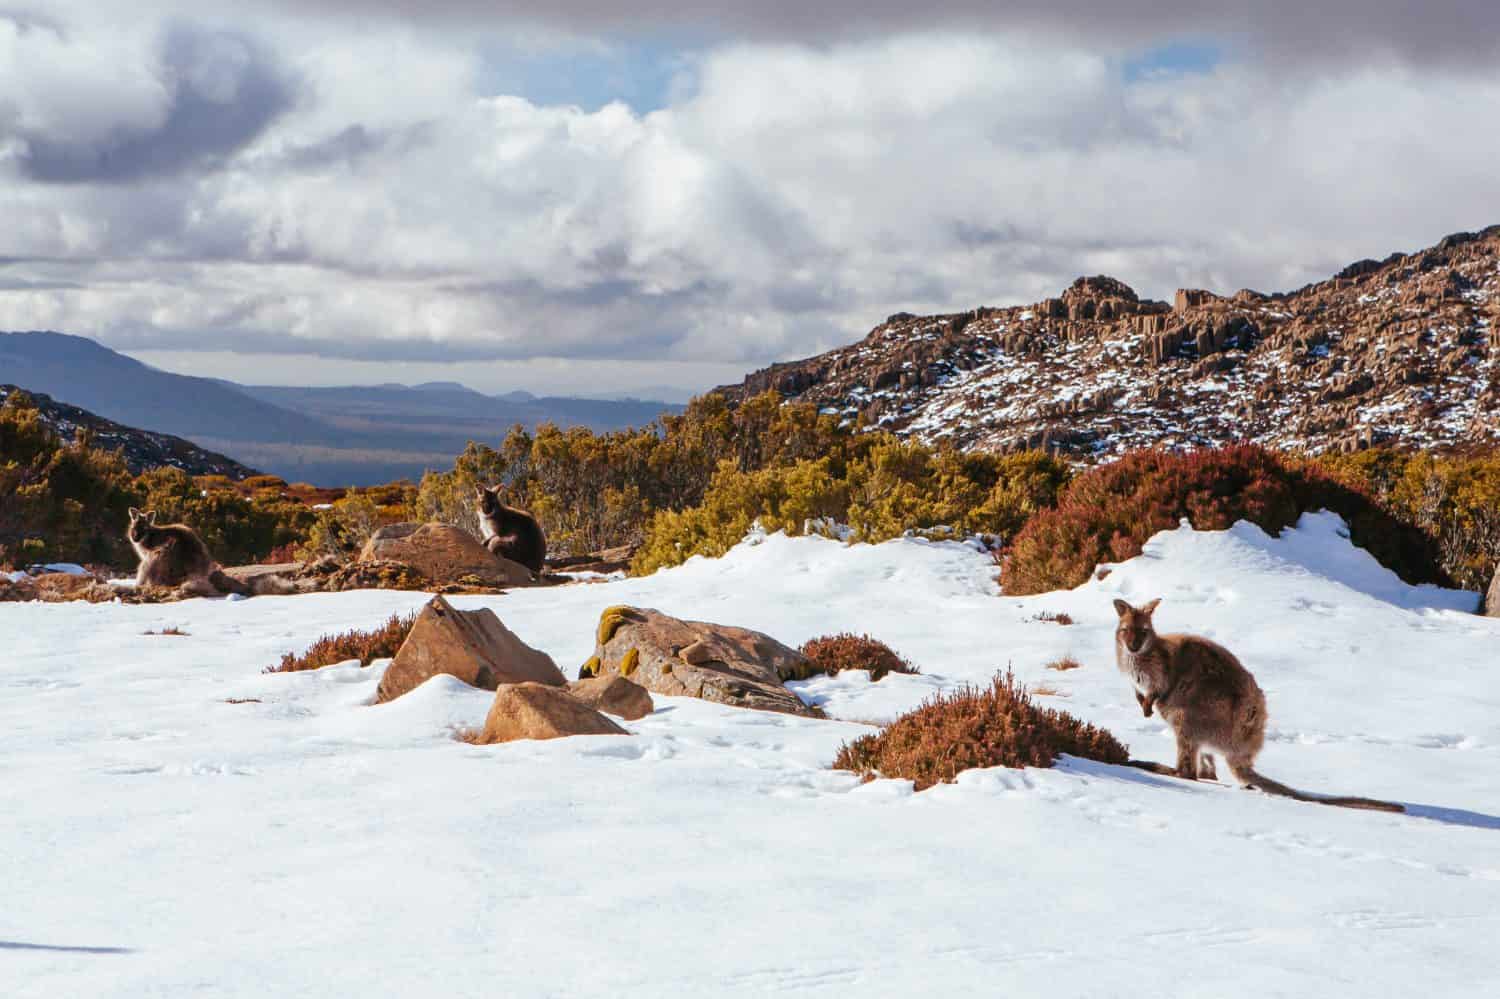 Il villaggio sciistico di Ben Lomond e i canguri selvatici in una tranquilla giornata invernale in Tasmania, Australia